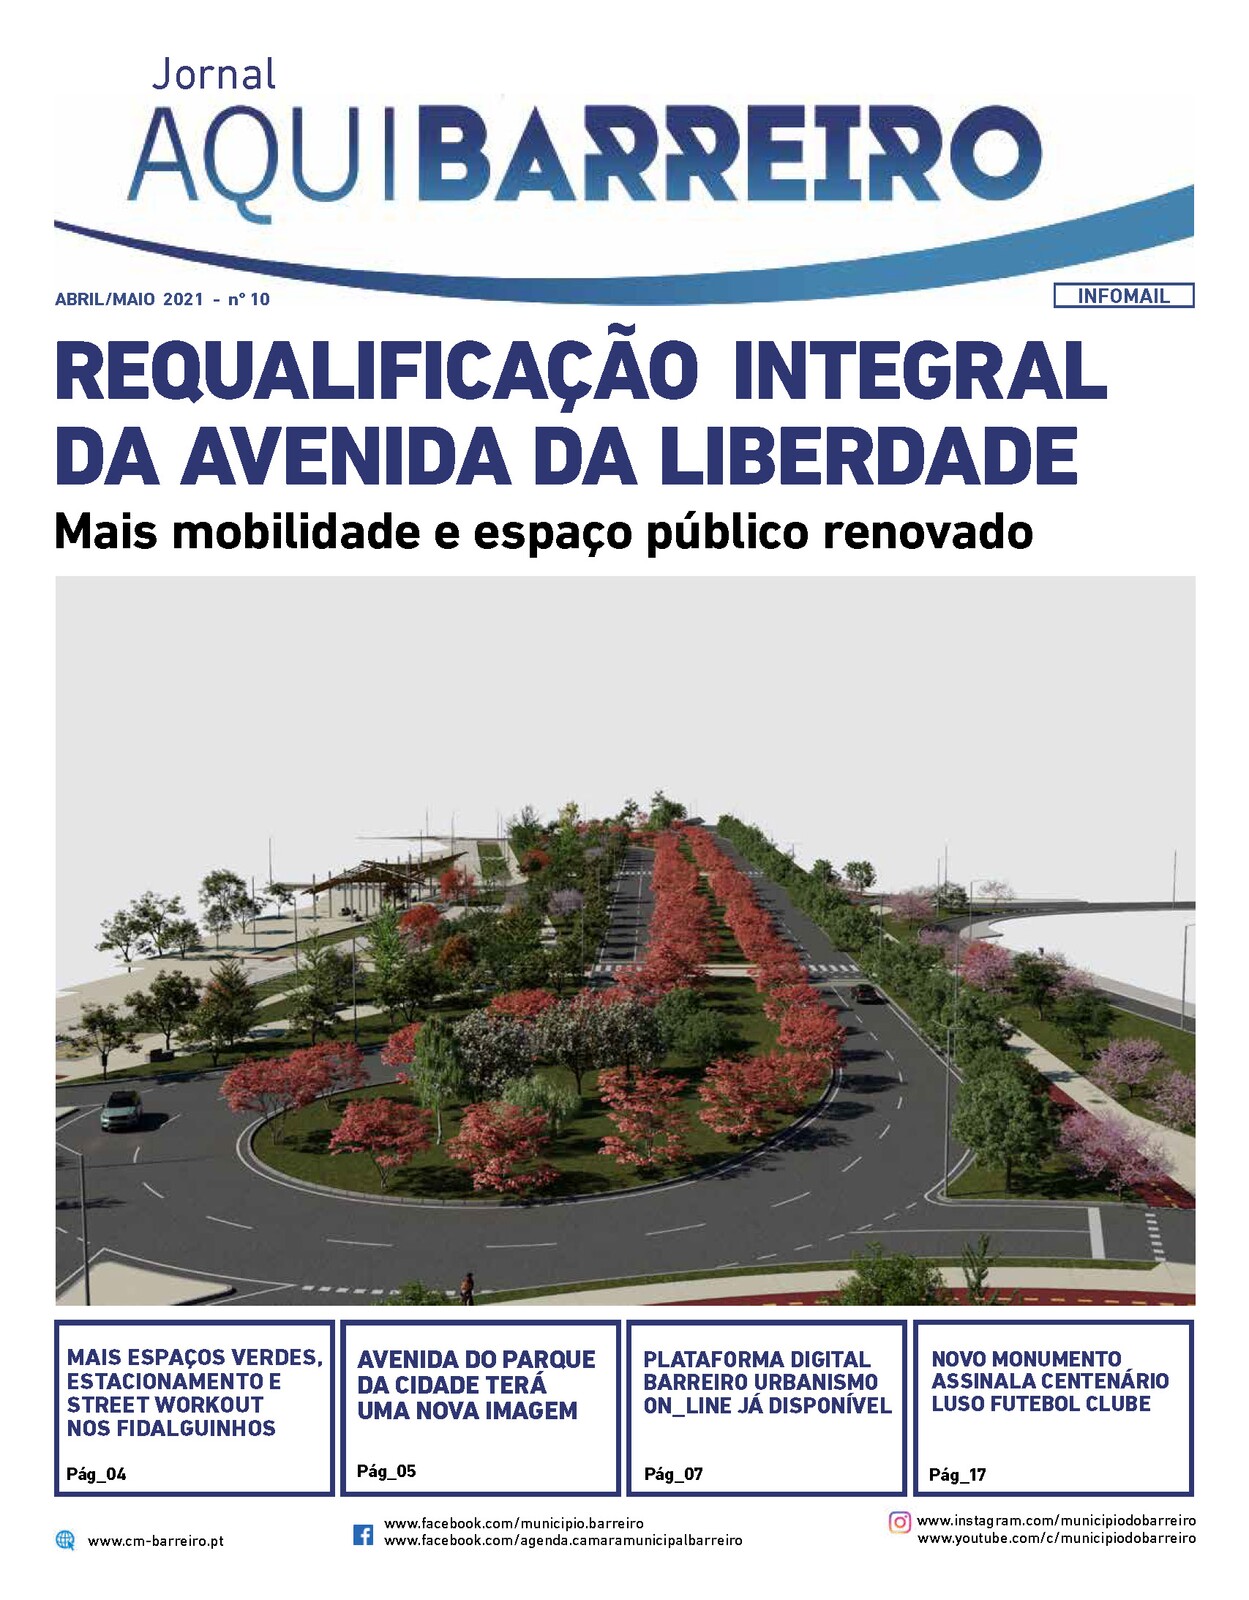 Jornal Municipal “Aqui Barreiro” abril/maio 2021 já disponível